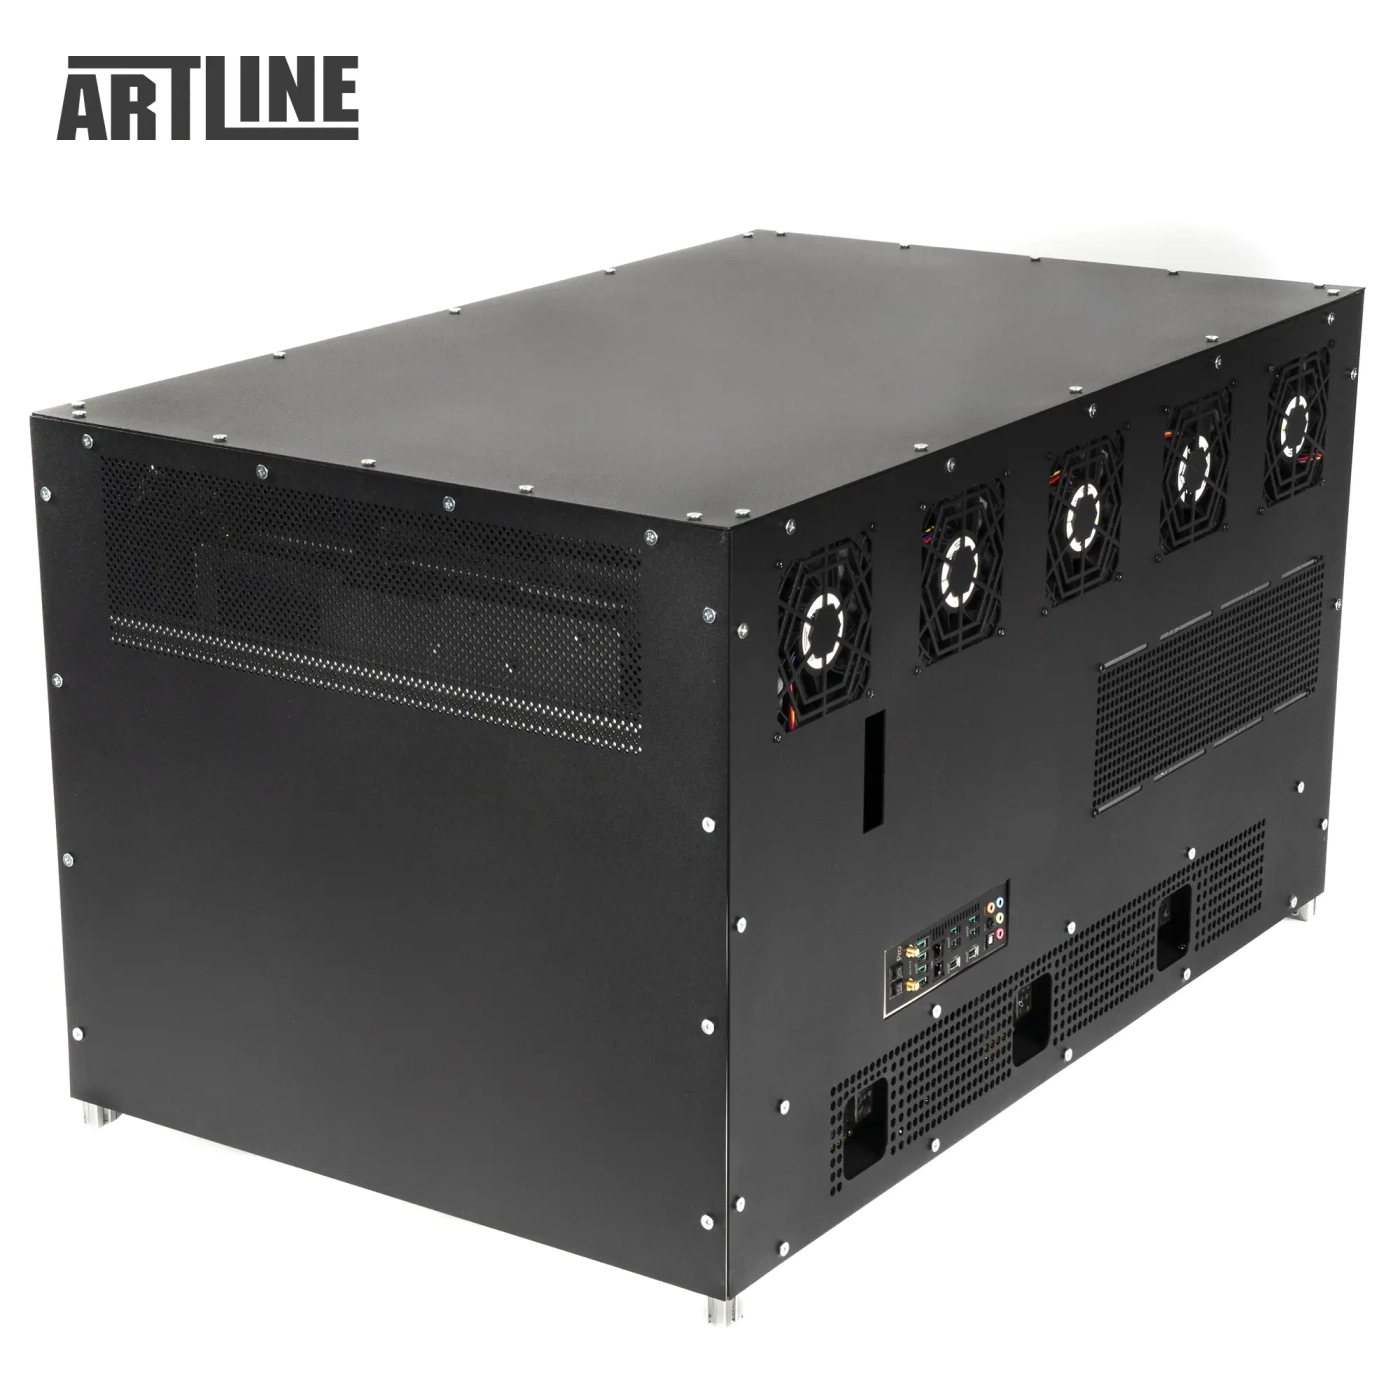 Купить Сервер ARTLINE Business R99 (R99v01) - фото 7